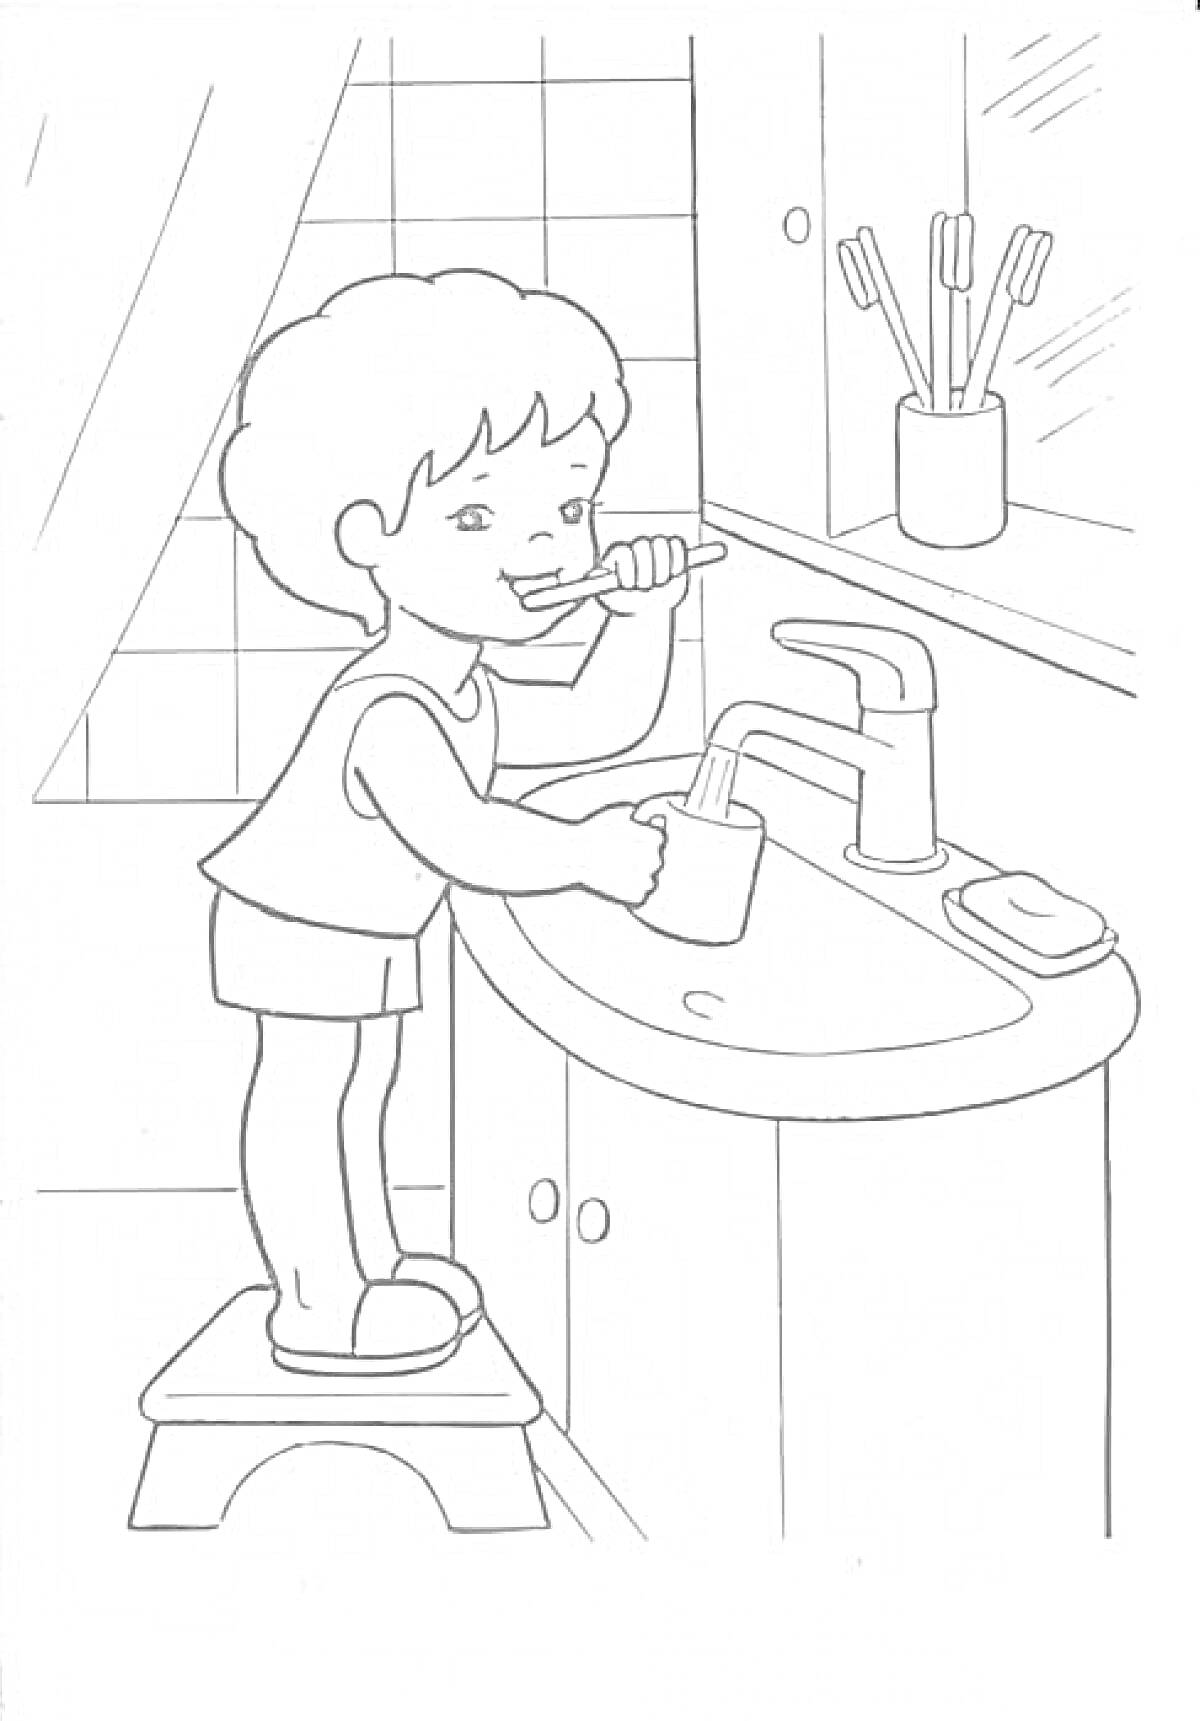 Раскраска Ребенок чистит зубы в ванной комнате, на тумбочке мыло и кружка, в стаканчике зубные щетки